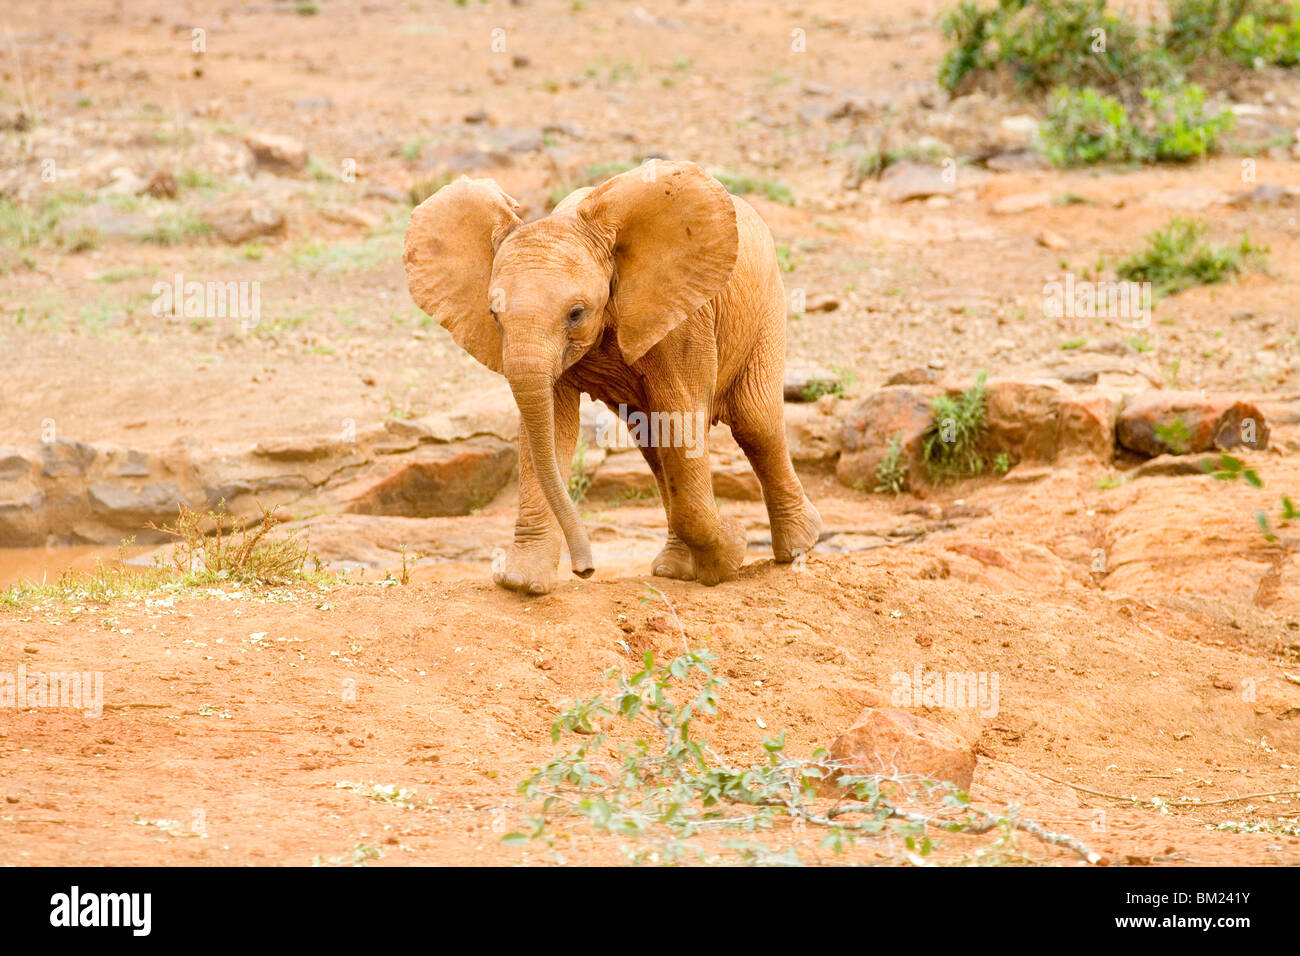 La pantorrilla del elefante africano (Loxodonta africana) en un bosque, Nairobi, Kenia Foto de stock